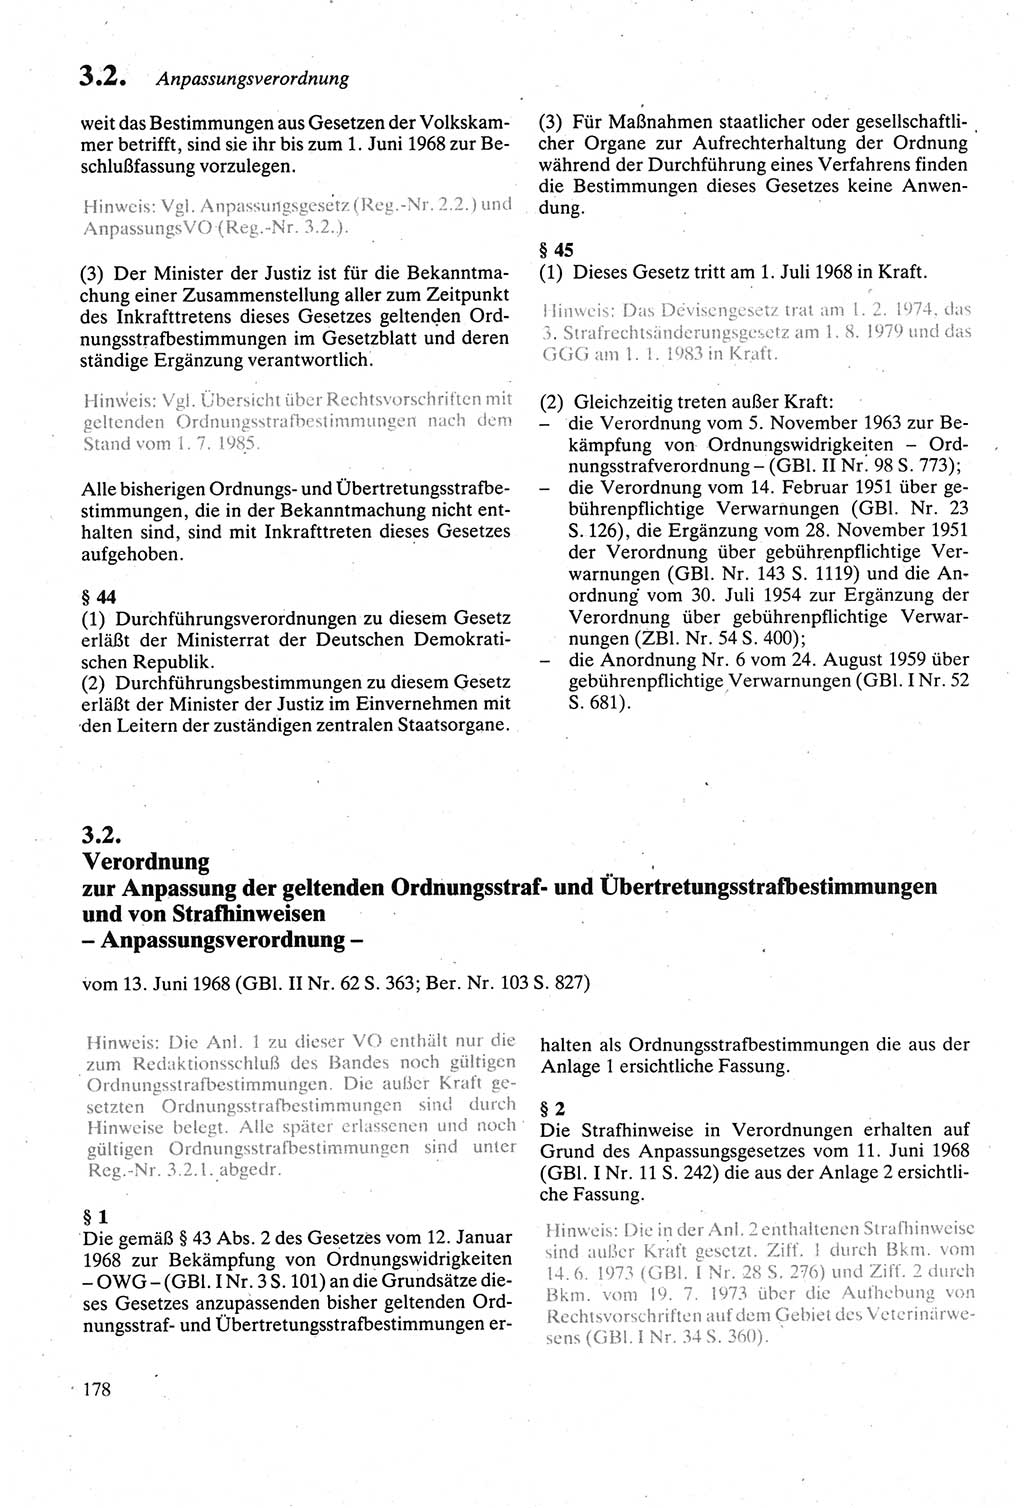 Strafgesetzbuch (StGB) der Deutschen Demokratischen Republik (DDR) sowie angrenzende Gesetze und Bestimmungen 1979, Seite 178 (StGB DDR Ges. Best. 1979, S. 178)